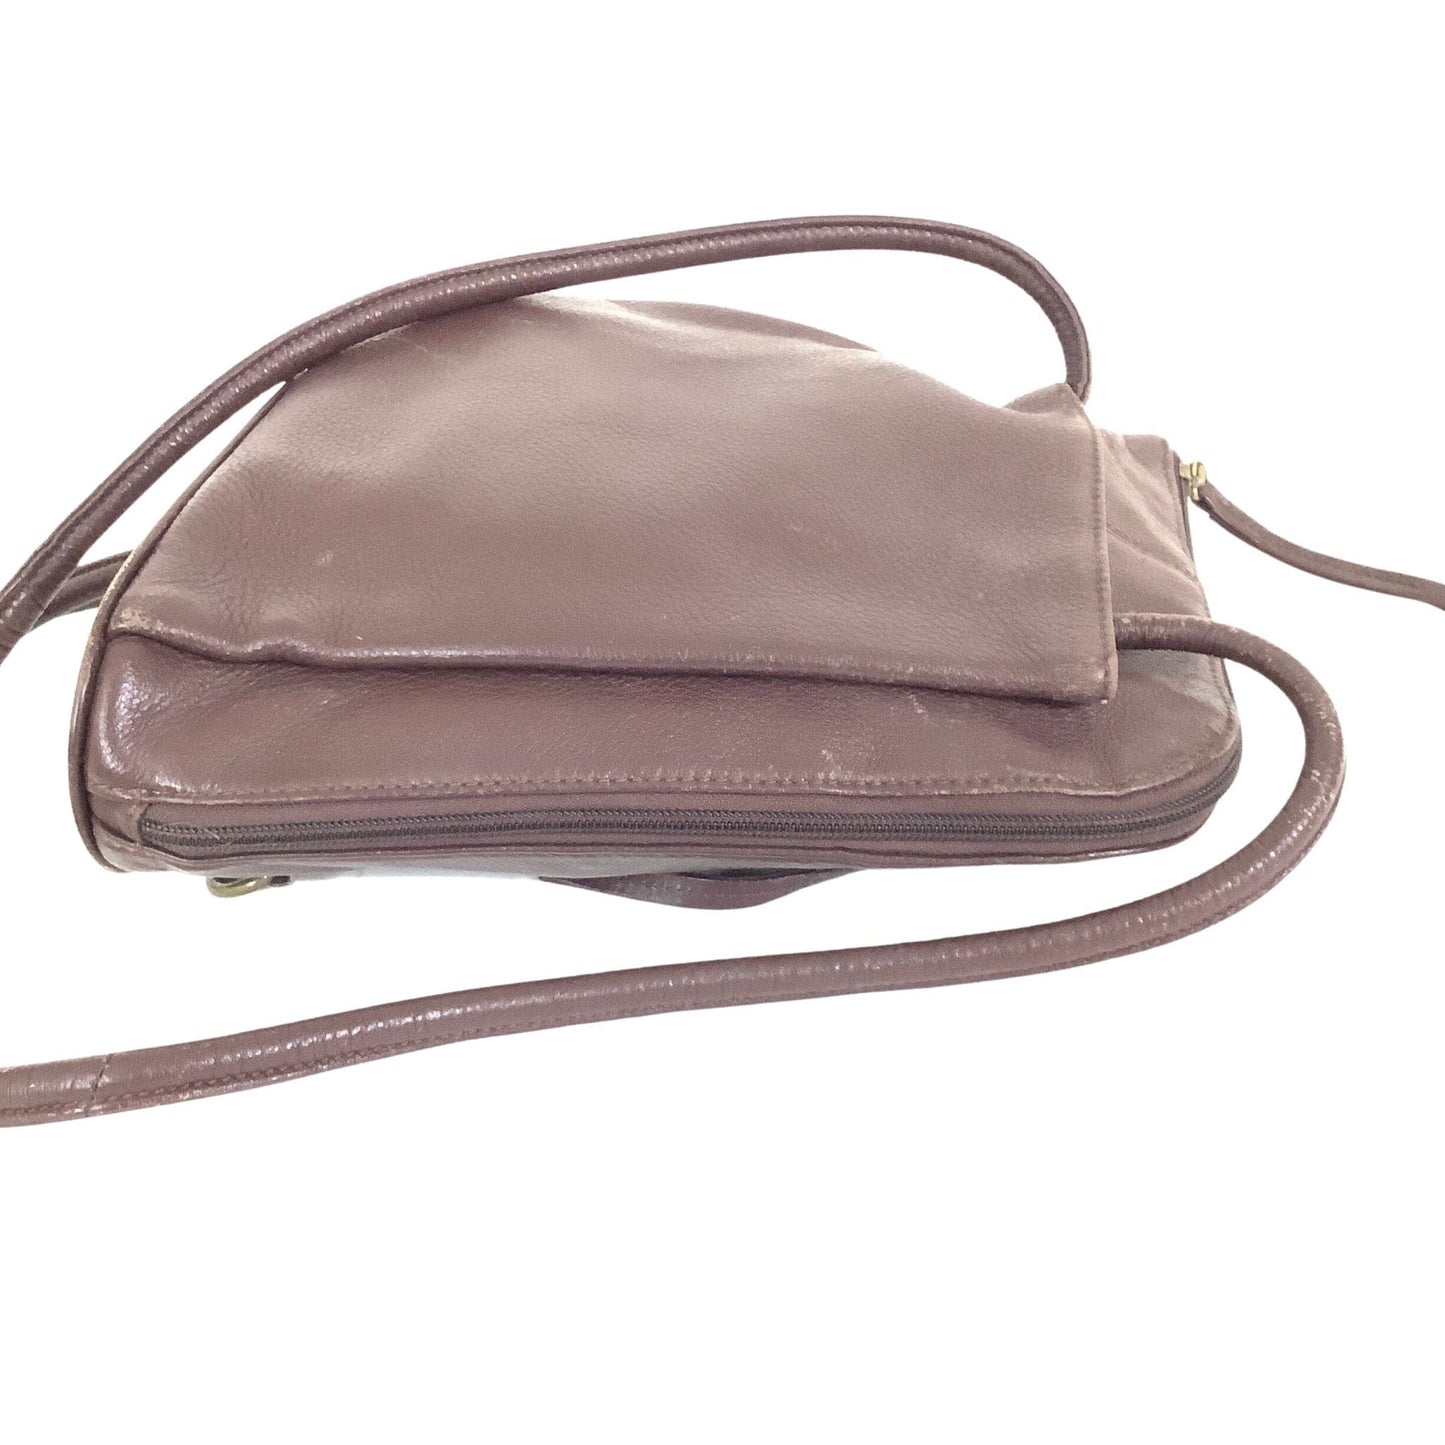 Vintage Clarks Backpack Brown / Leather / Vintage 1990s